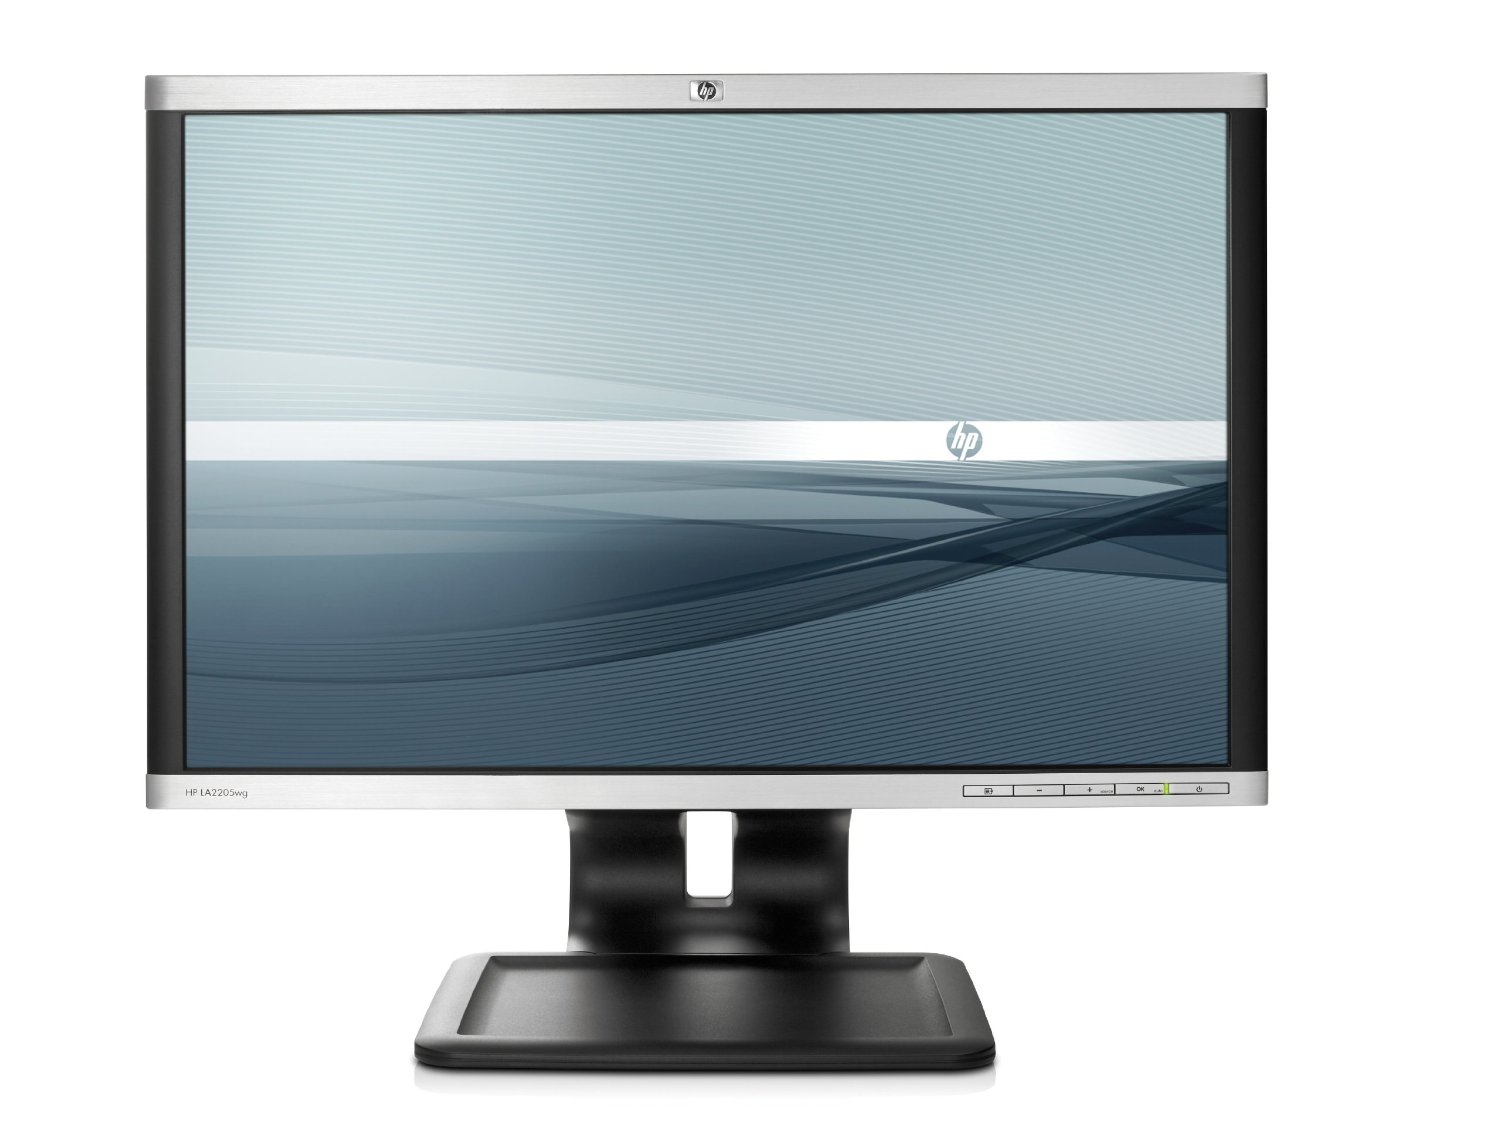 Compaq LA2405wg 24-inch Widescreen LCD Monitor